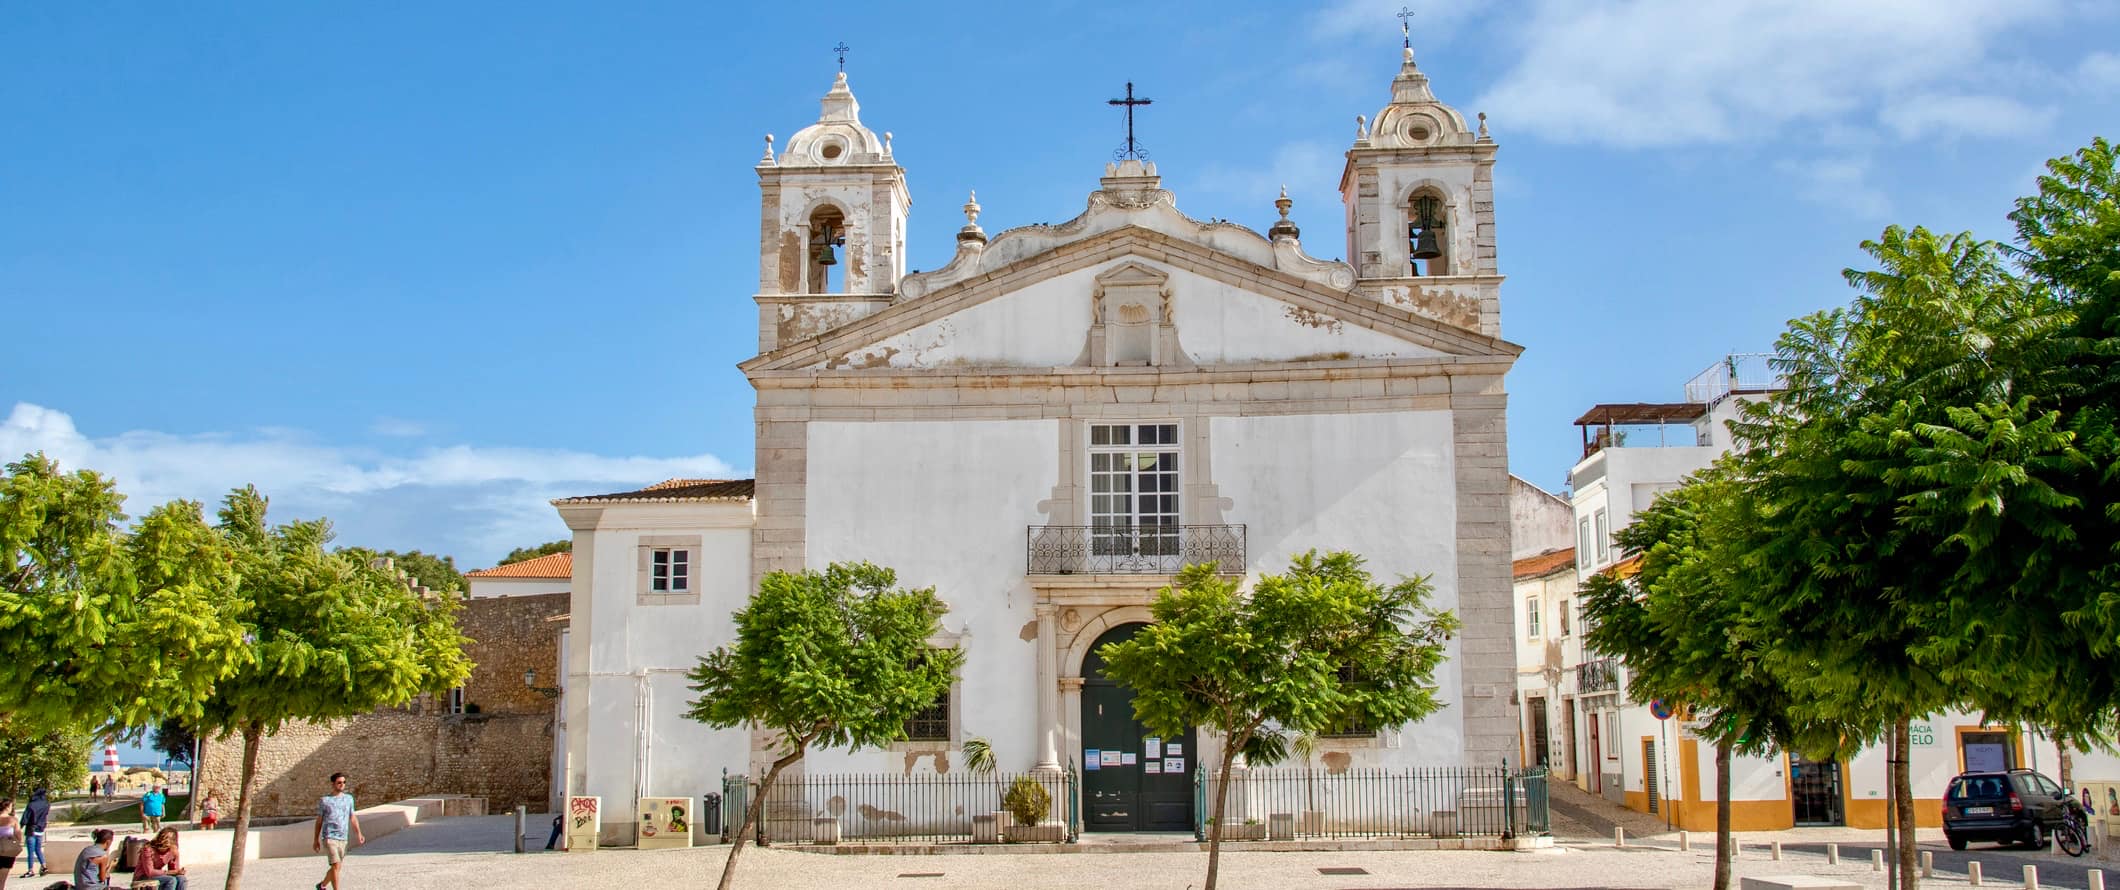 A Igreja Histórica de Santa Maria em Lagusha, Portugal, em um dia ensolarado